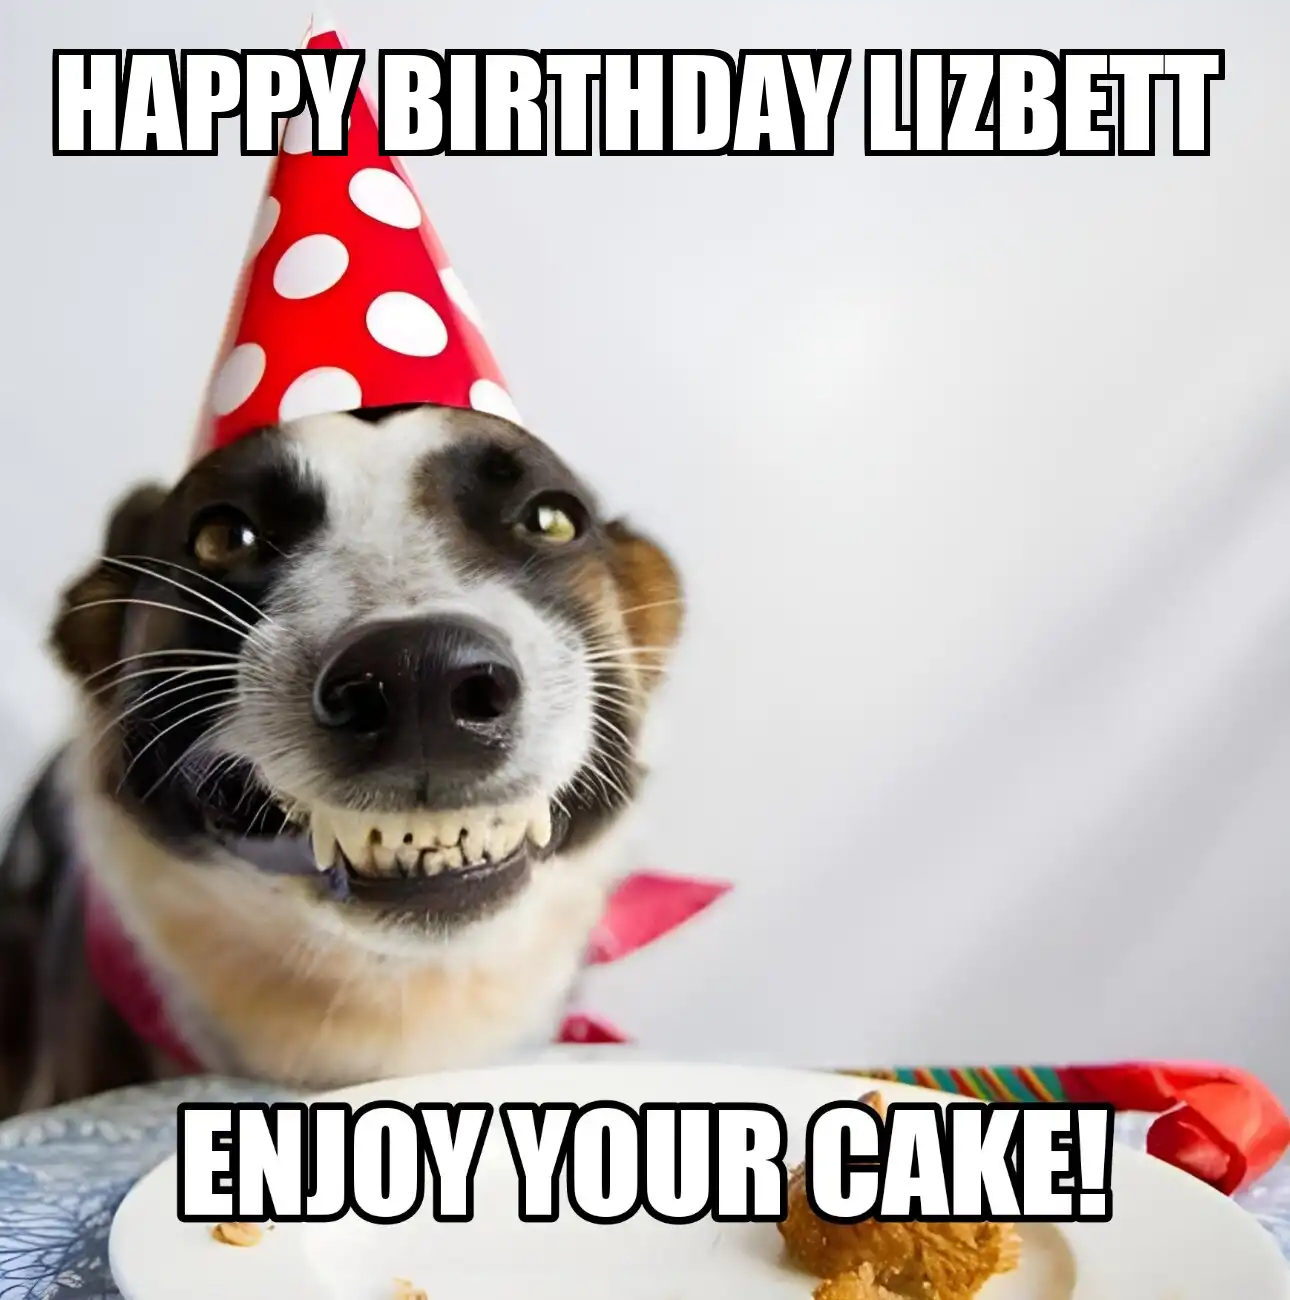 Happy Birthday Lizbett Enjoy Your Cake Dog Meme